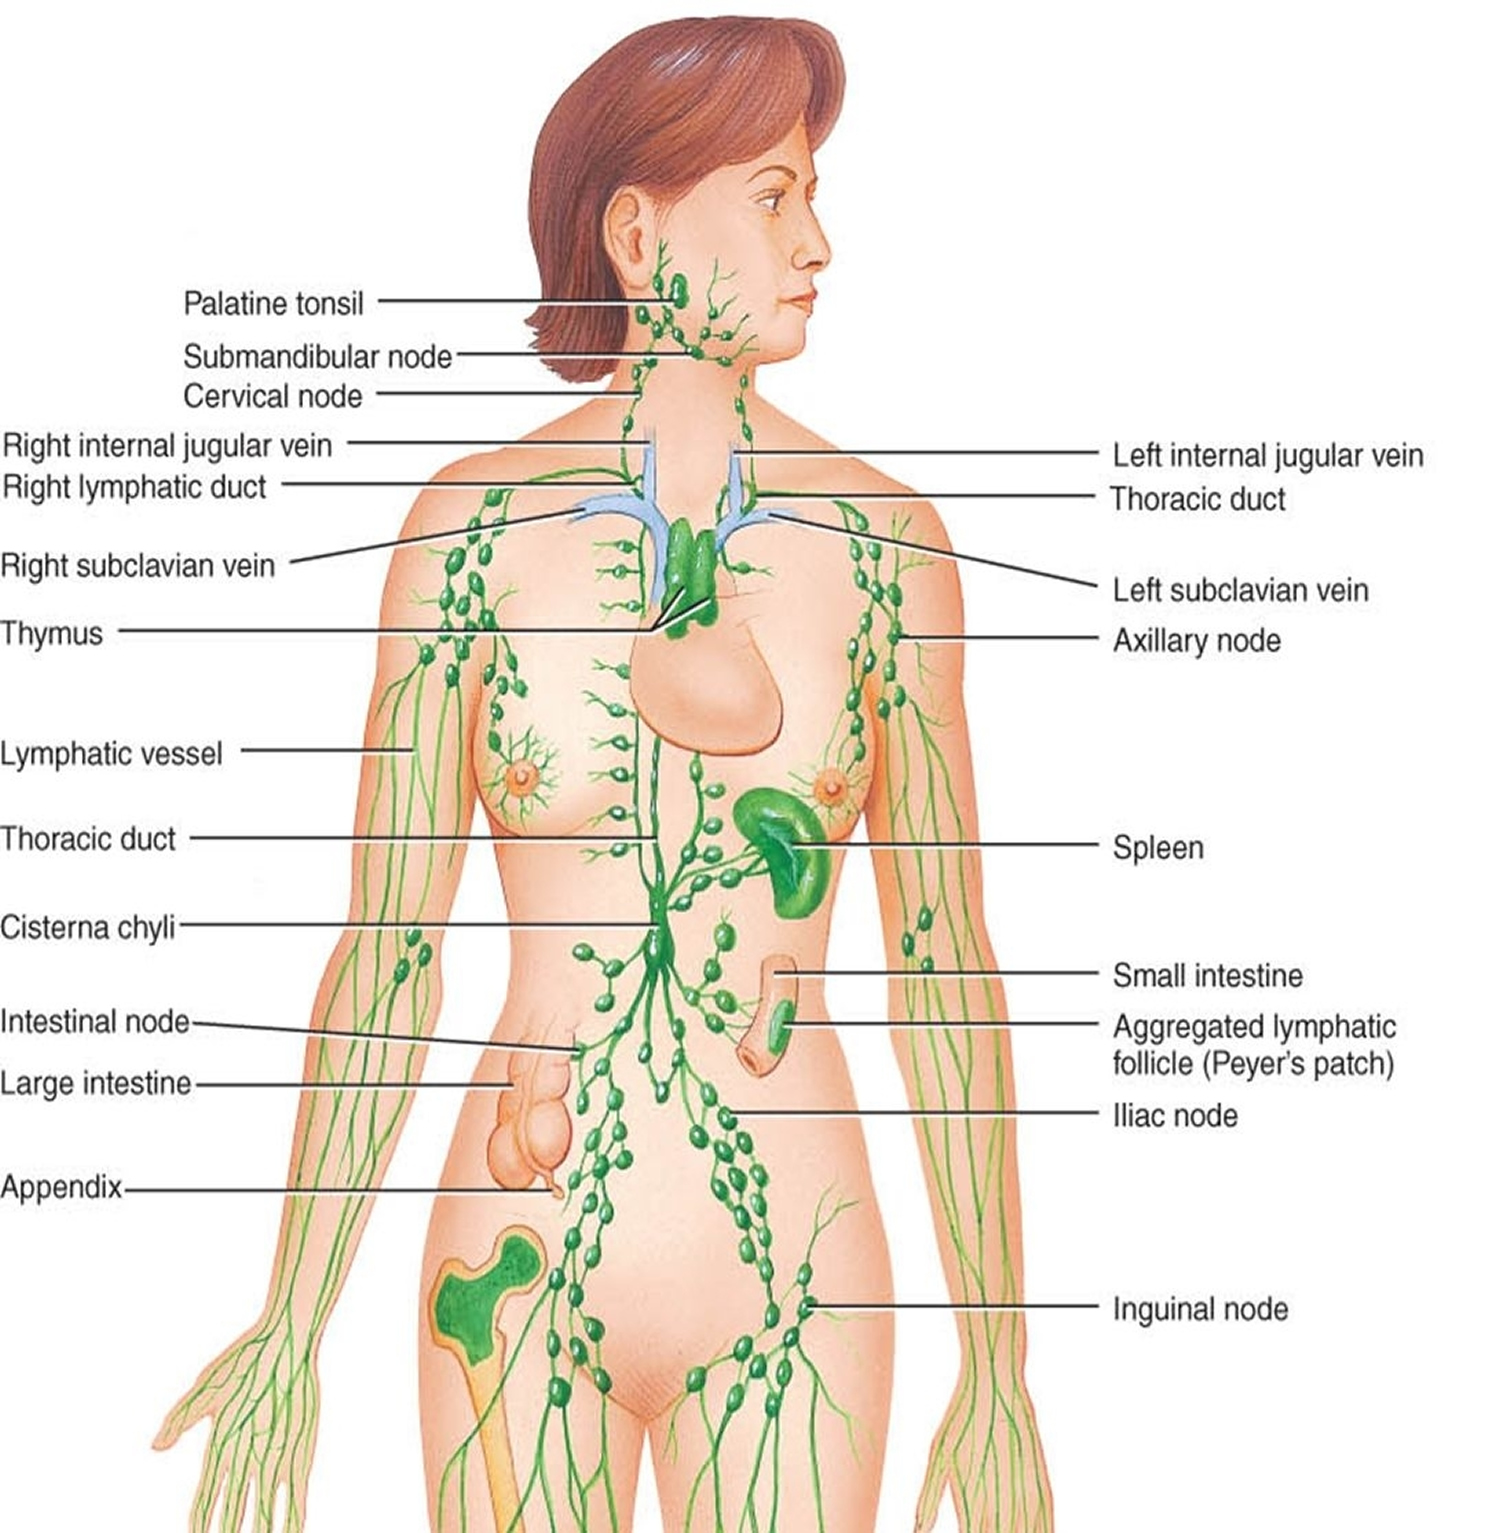 Locations of major lymph nodes